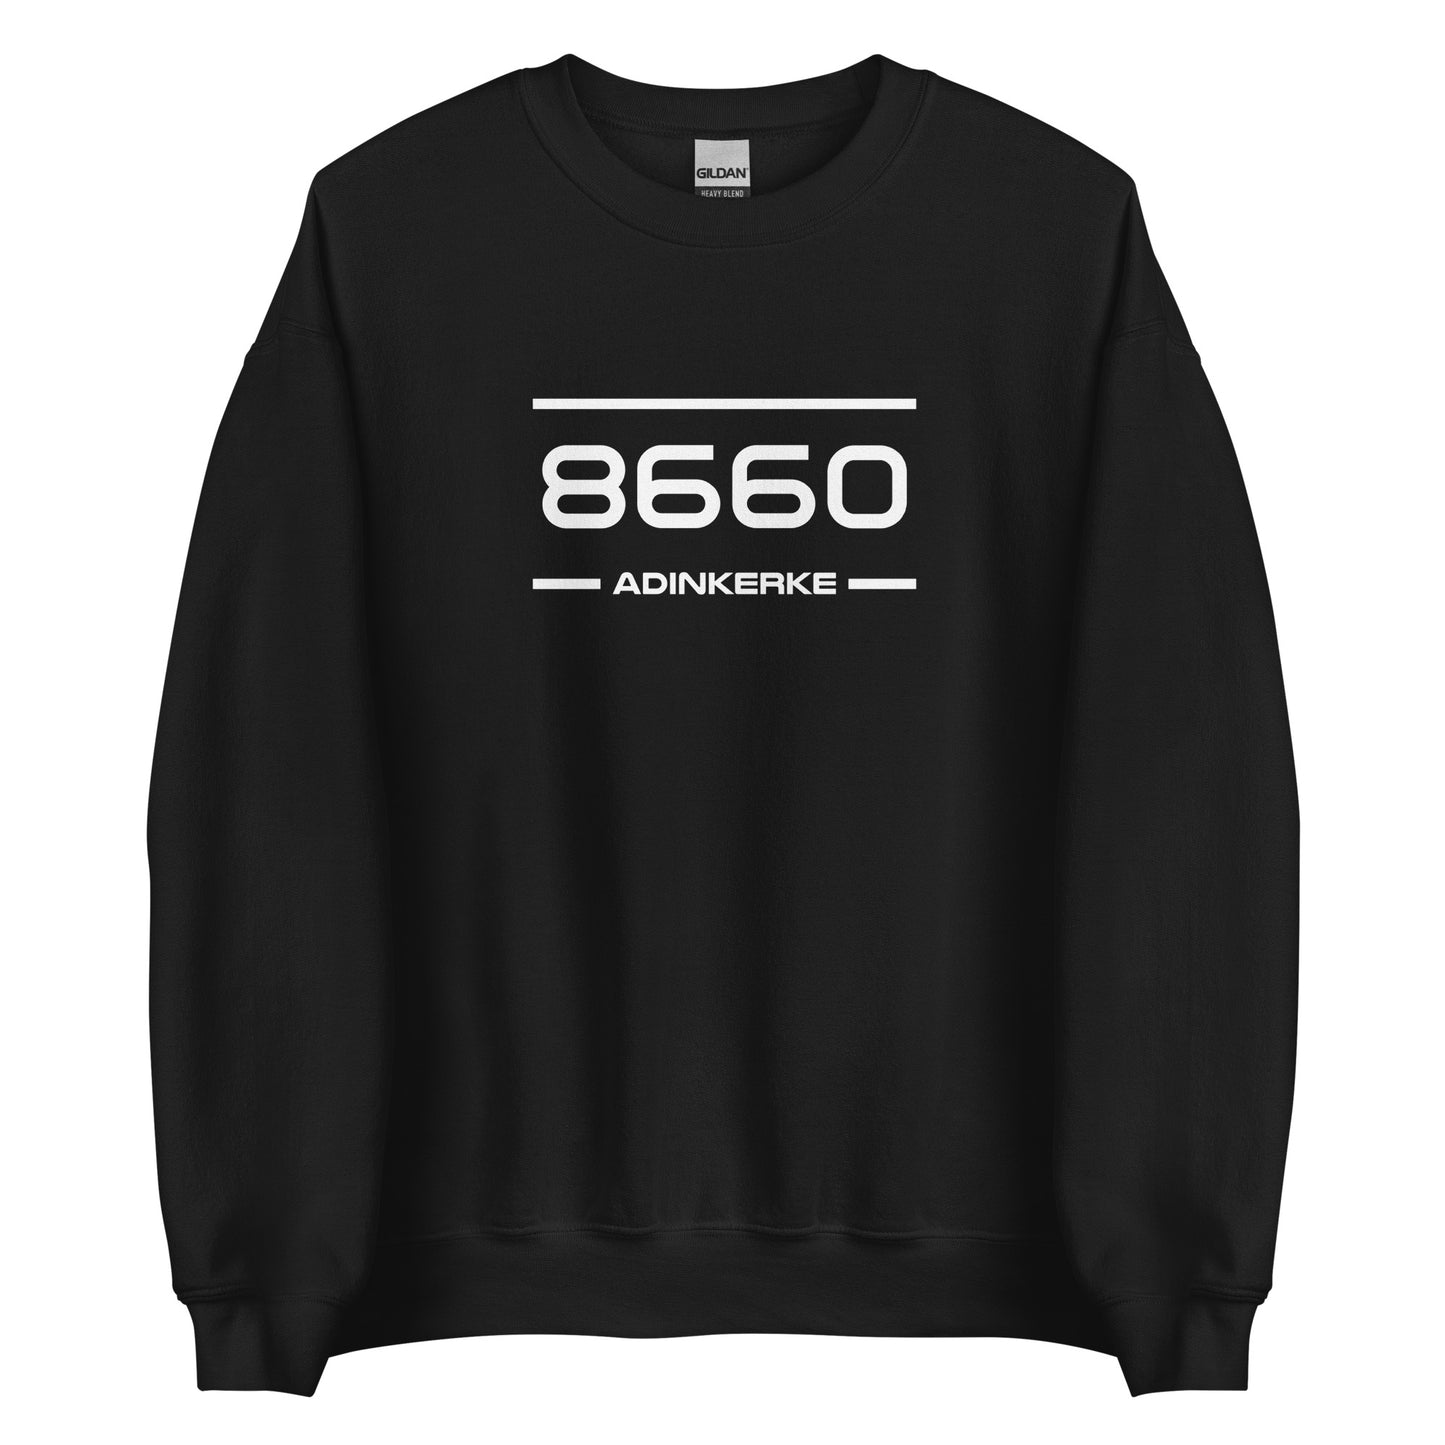 Sweater - 8660 - Adinkerke (M/V)